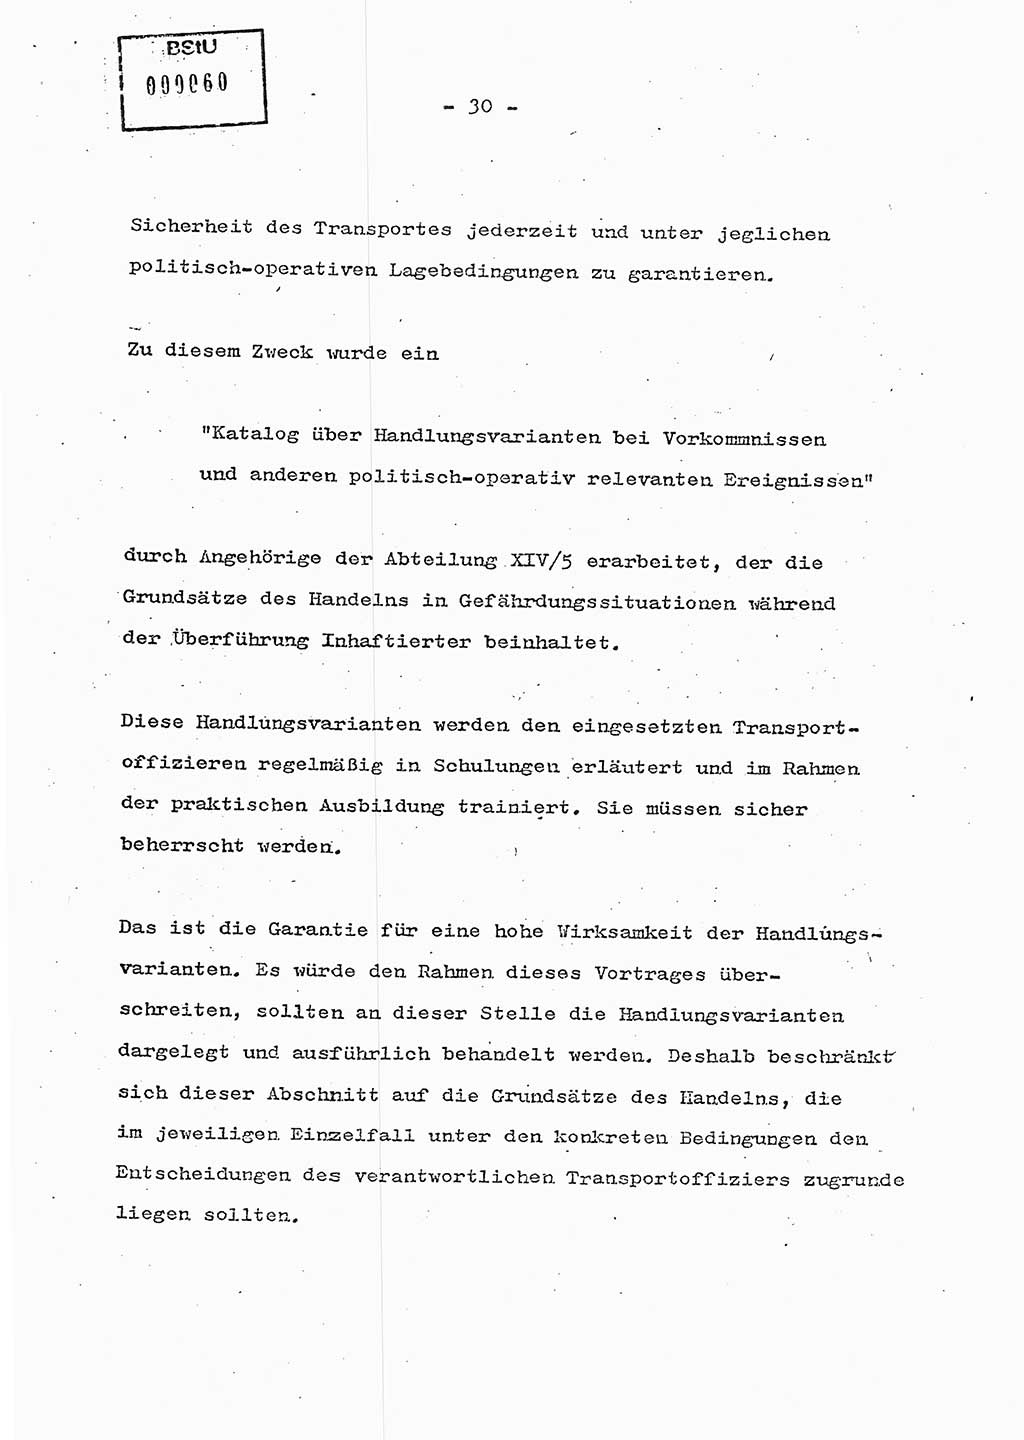 Schulungsmaterial Exemplar-Nr.: 7, Ministerium für Staatssicherheit [Deutsche Demokratische Republik (DDR)], Abteilung (Abt.) ⅩⅣ, Berlin 1986, Seite 30 (Sch.-Mat. Expl. 7 MfS DDR Abt. ⅩⅣ /86 1986, S. 30)